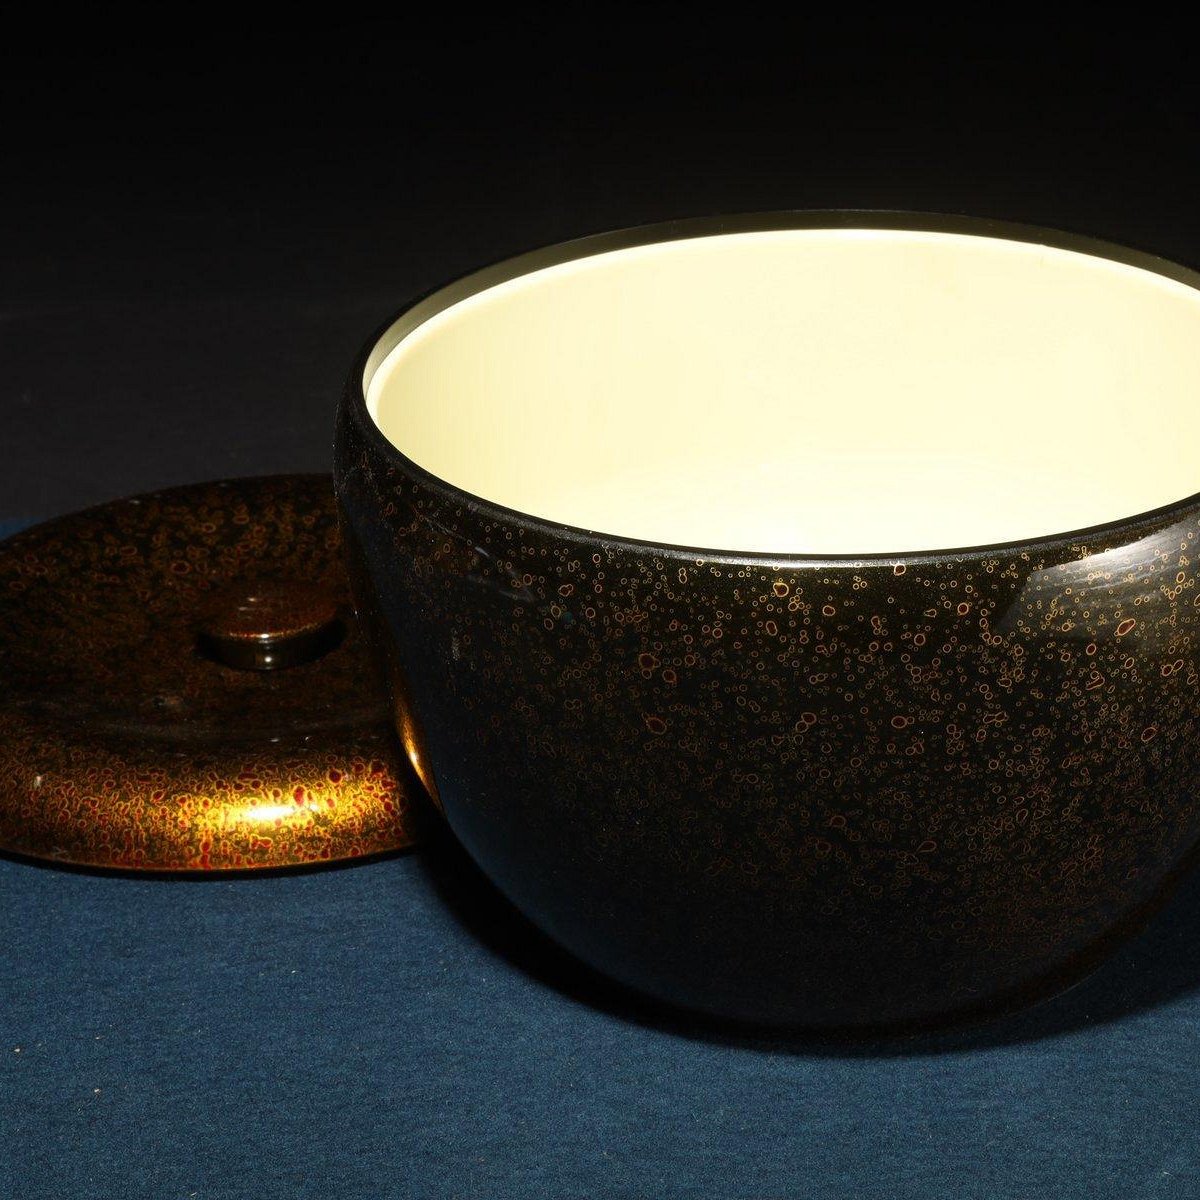 4/8結標各式未使用日本漆器茶餅盒重箱六件B040058 -漆碗漆盤漆盒茶箱 